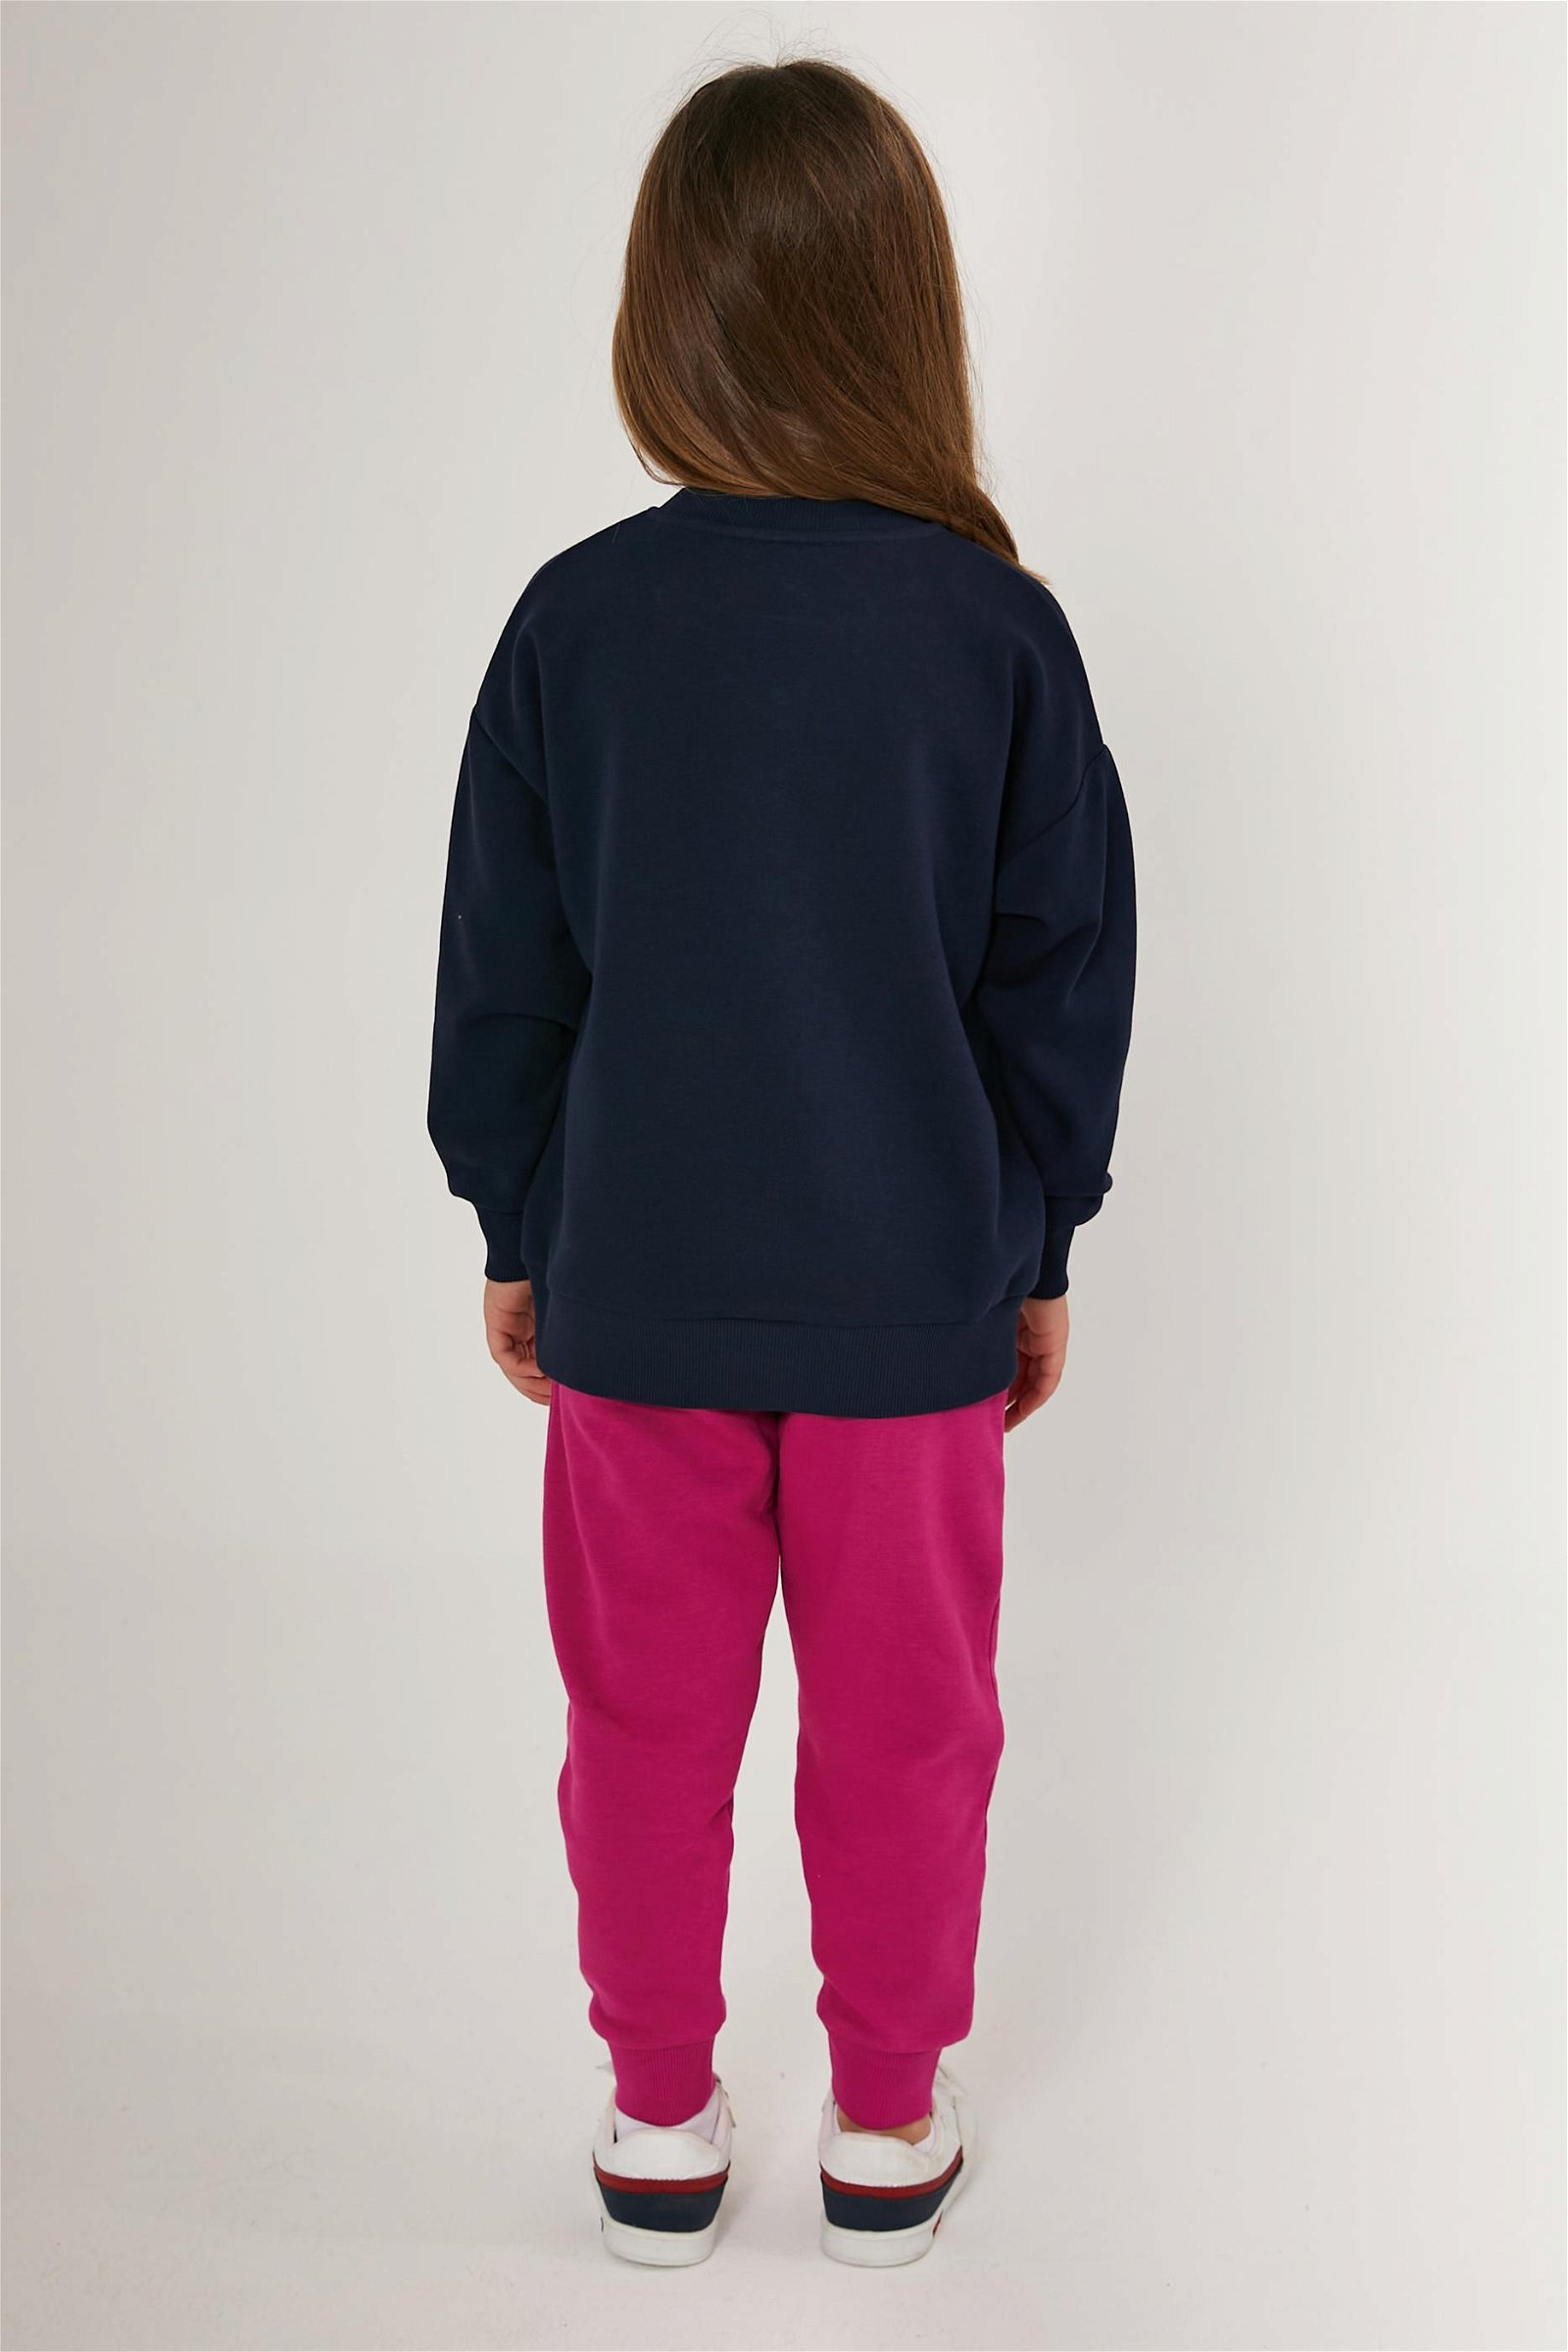 Kız Çocuk Lacivert Pijama Takımı